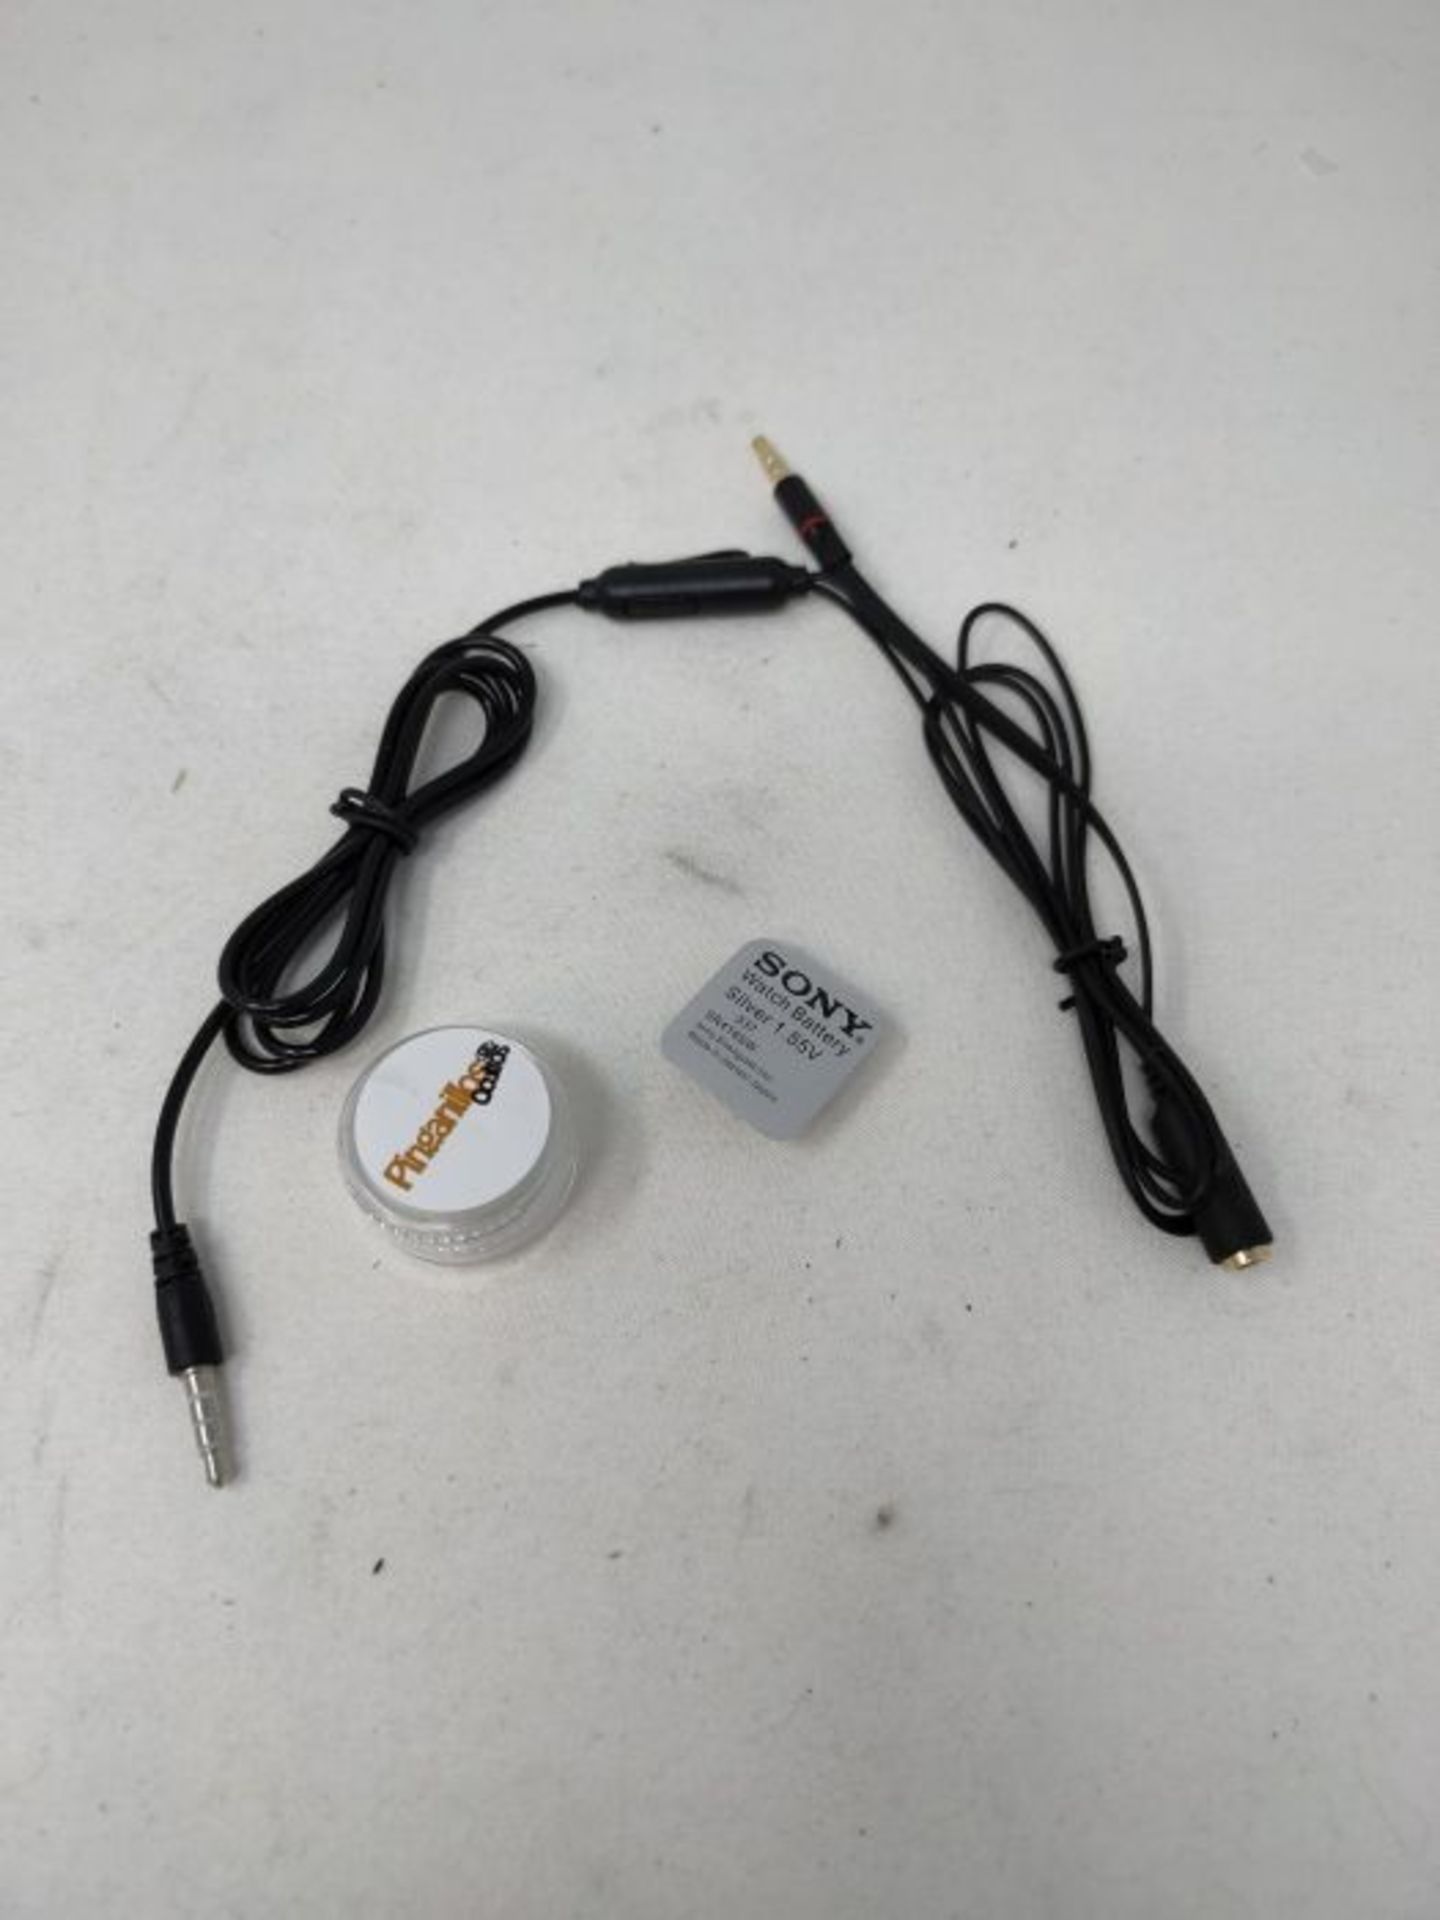 Vip Pro Combo Kit - Cuffie intrauricolari con cavo per collo, non visibili - Image 2 of 2